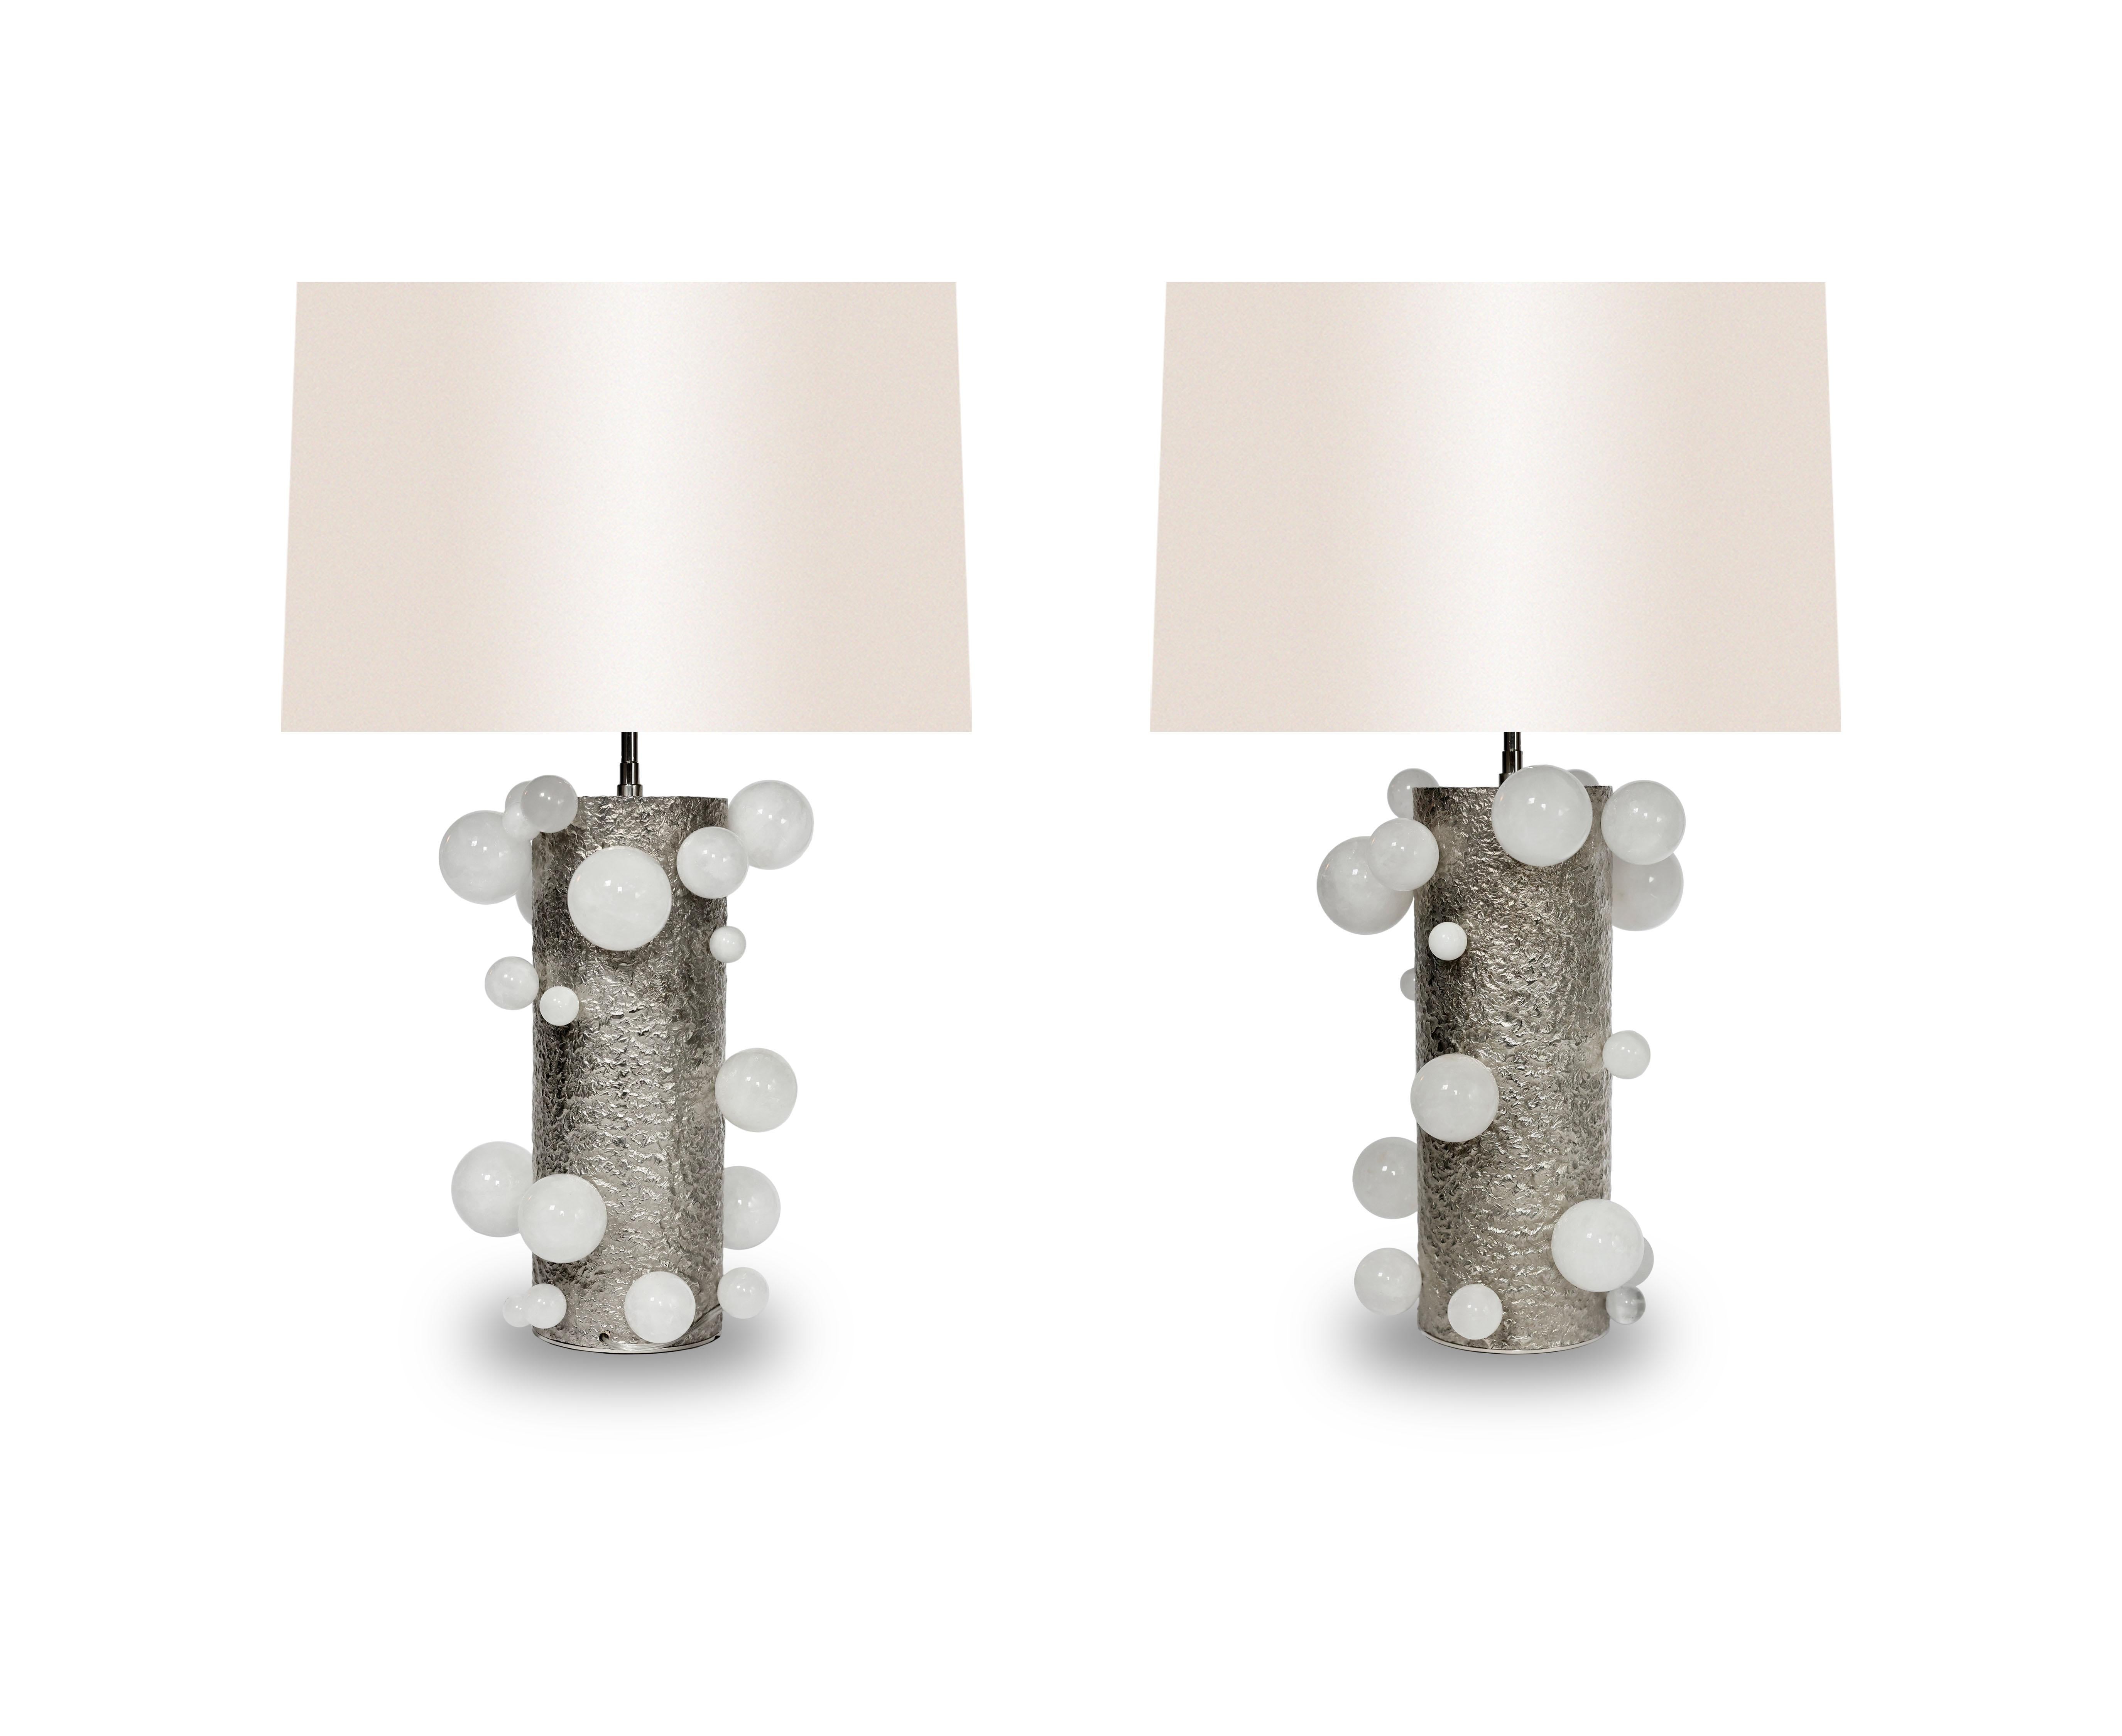 Paar Lampen aus Bergkristall mit Sockel aus gehämmertem Nickel

Erstellt von Phoenix.

Die Lampenschirme sind nicht enthalten.